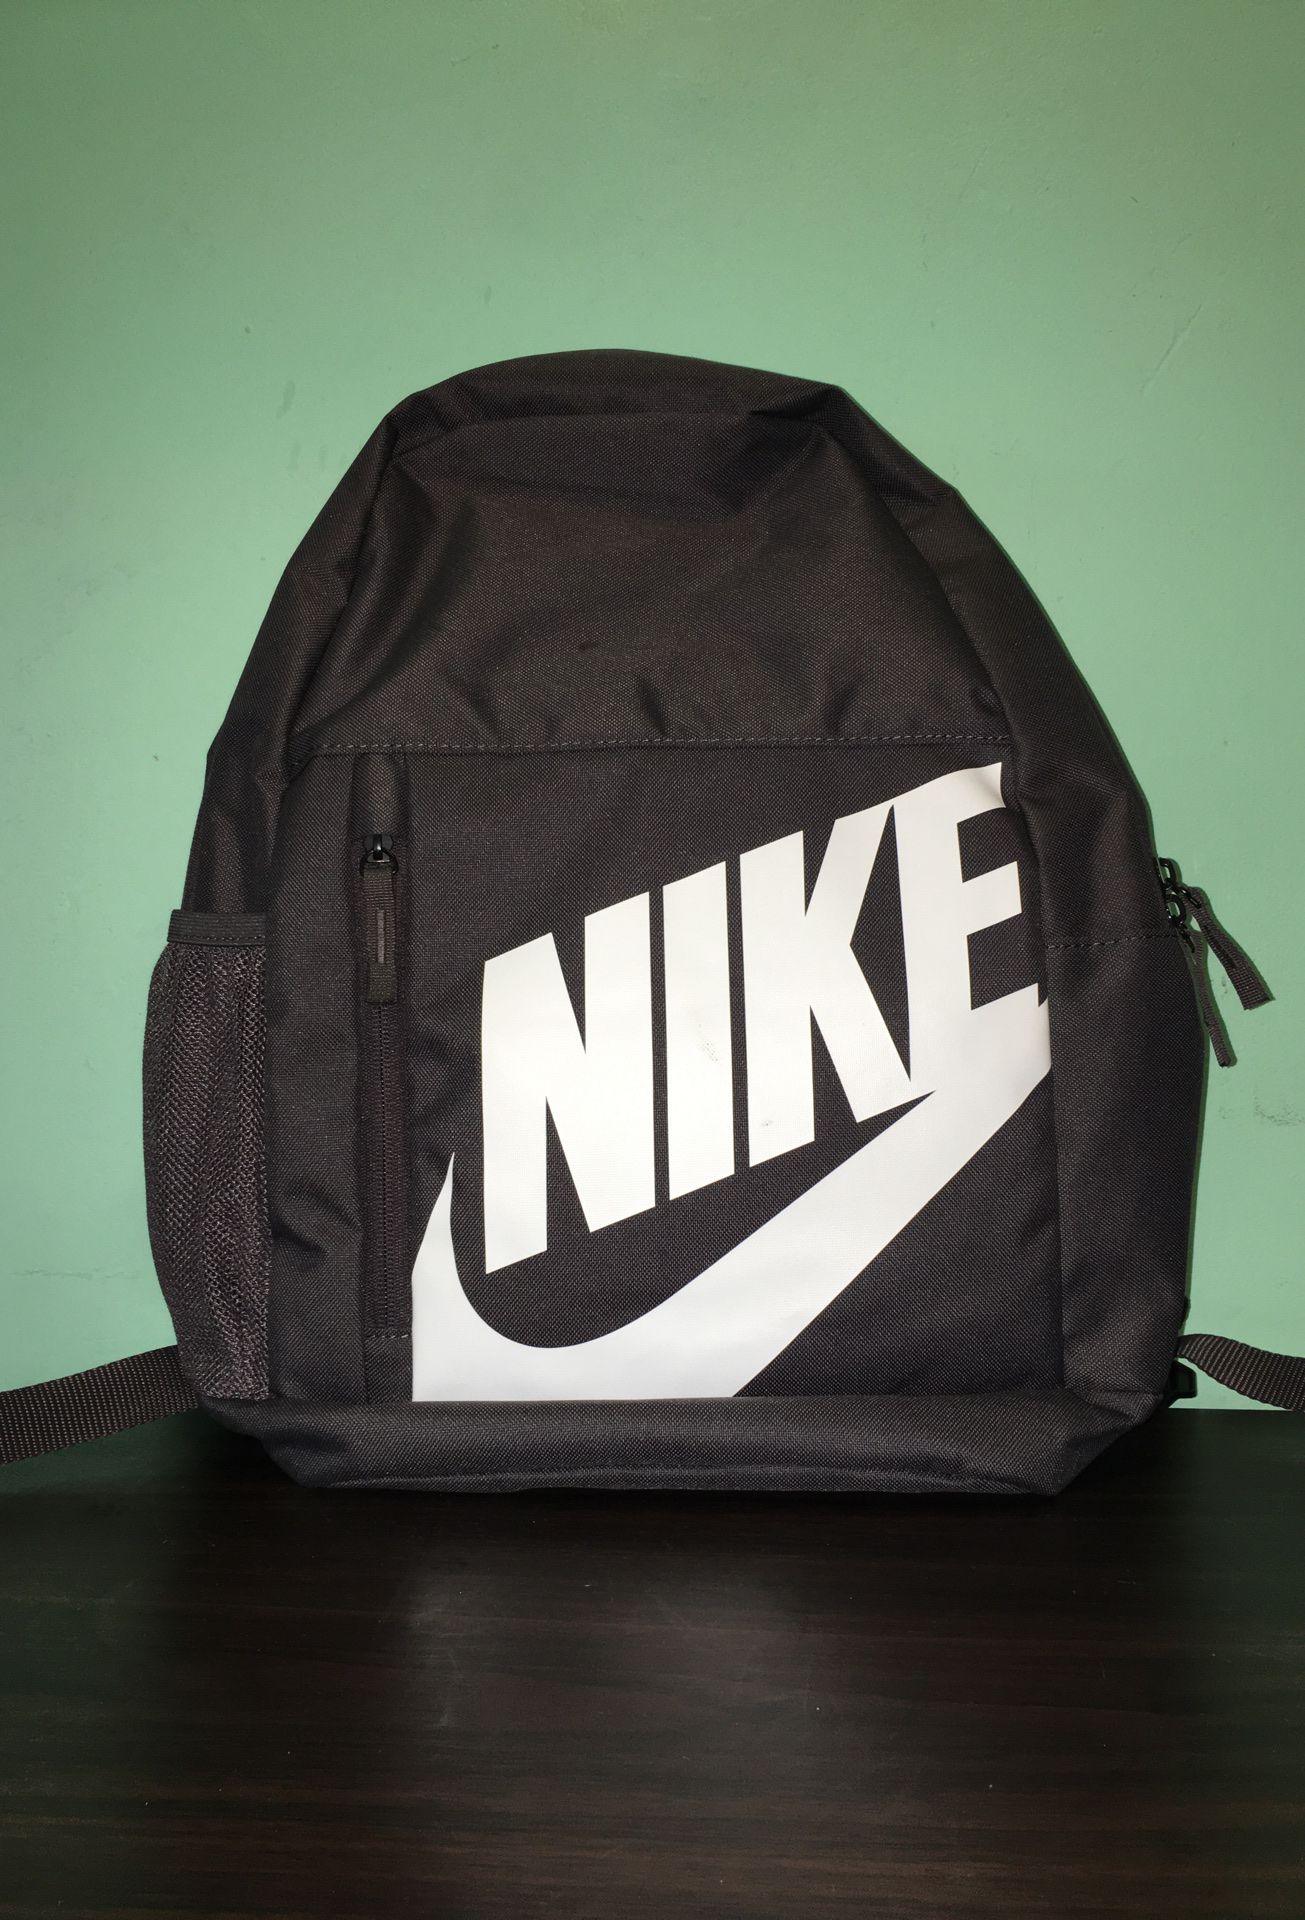 Brand new nike backpack